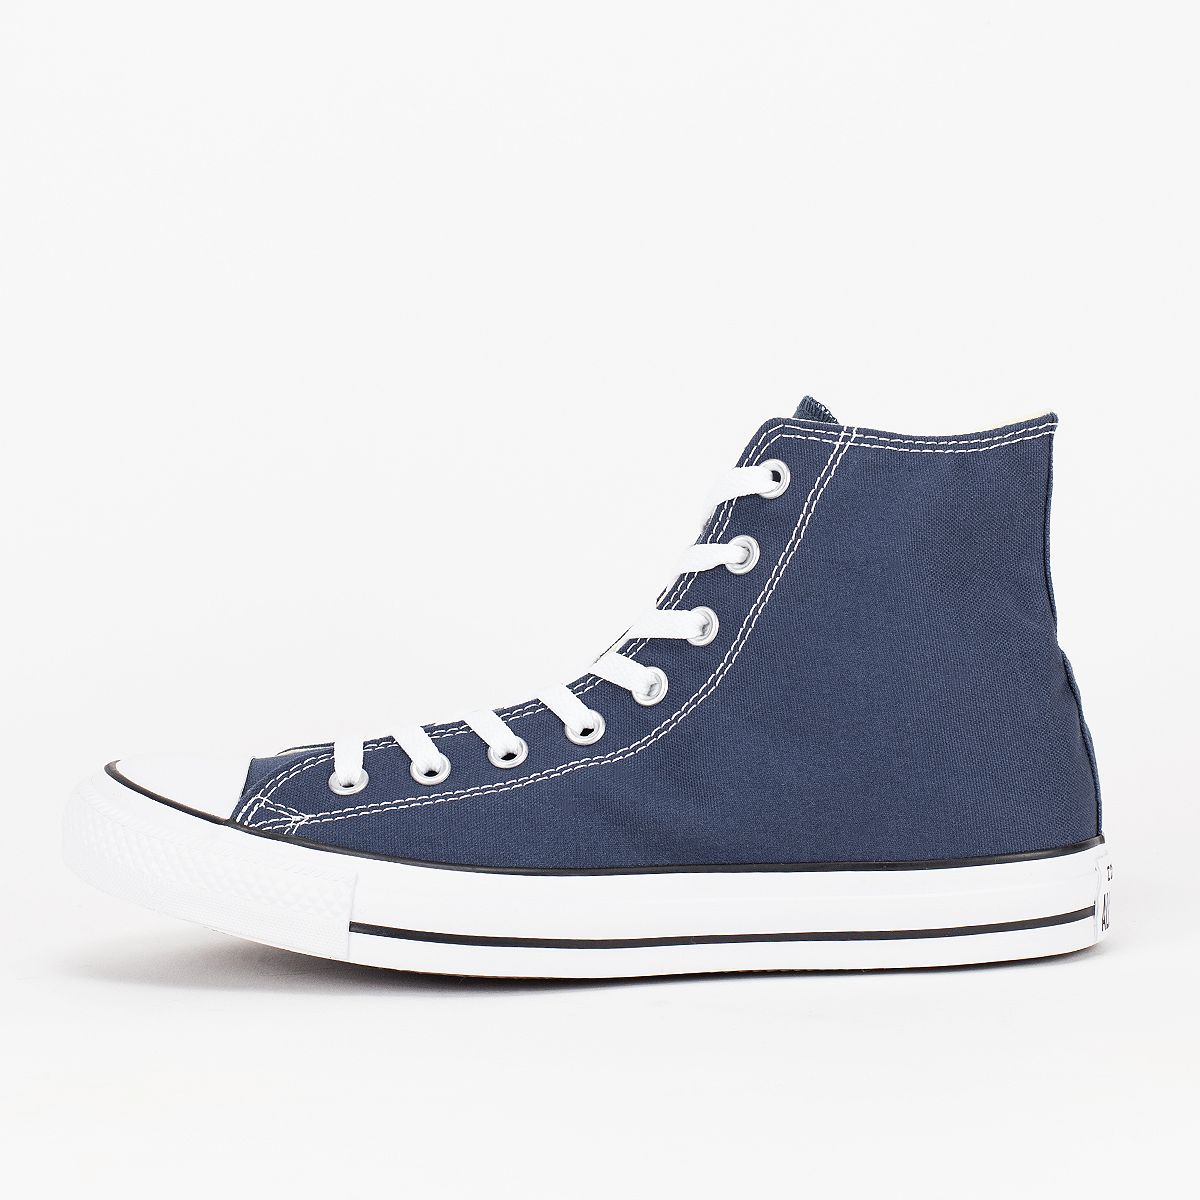 Converse Chuck Taylor All Star Hi Fashion sneakers Schoenen blue maat: 46 beschikbare maaten:41.5 43 44 45 42.5 44.5 46 48